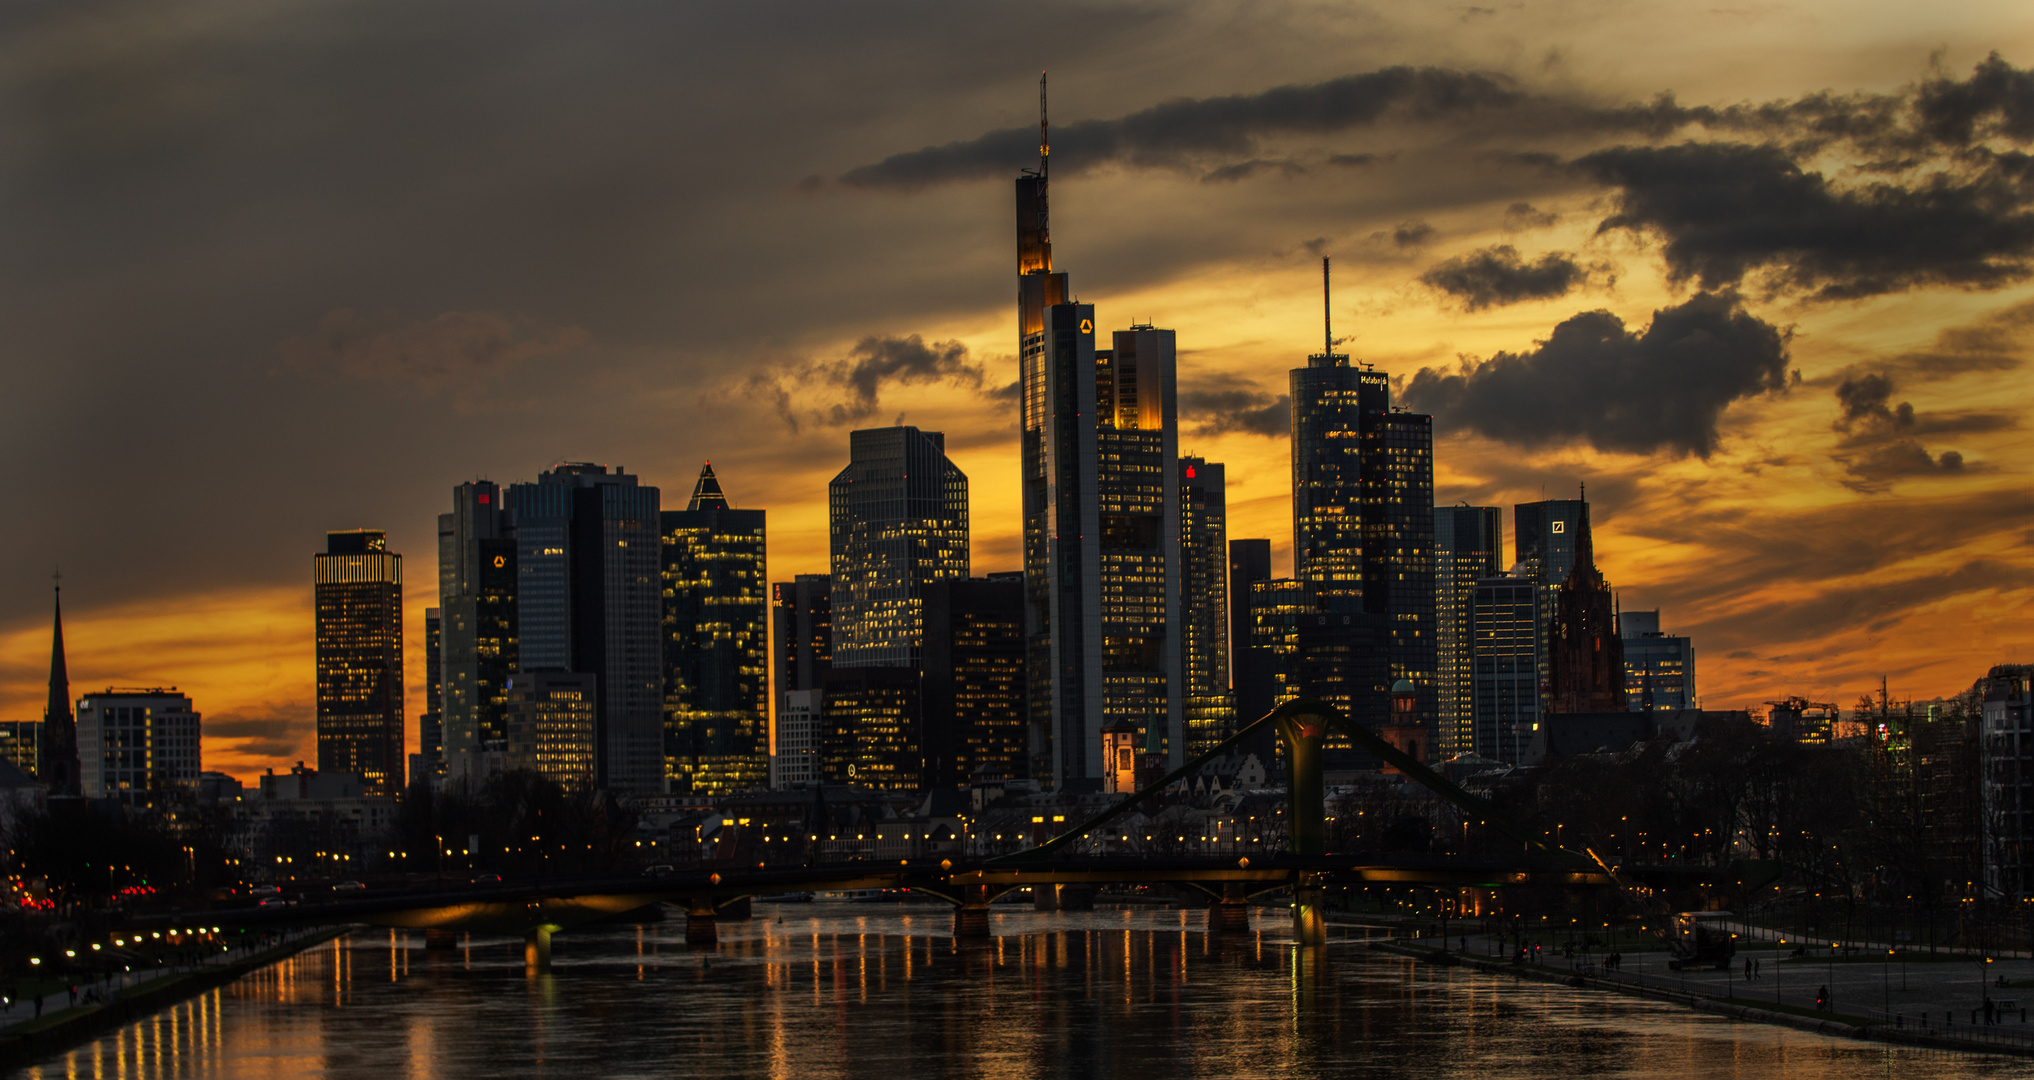 Frankfurt - Skyline